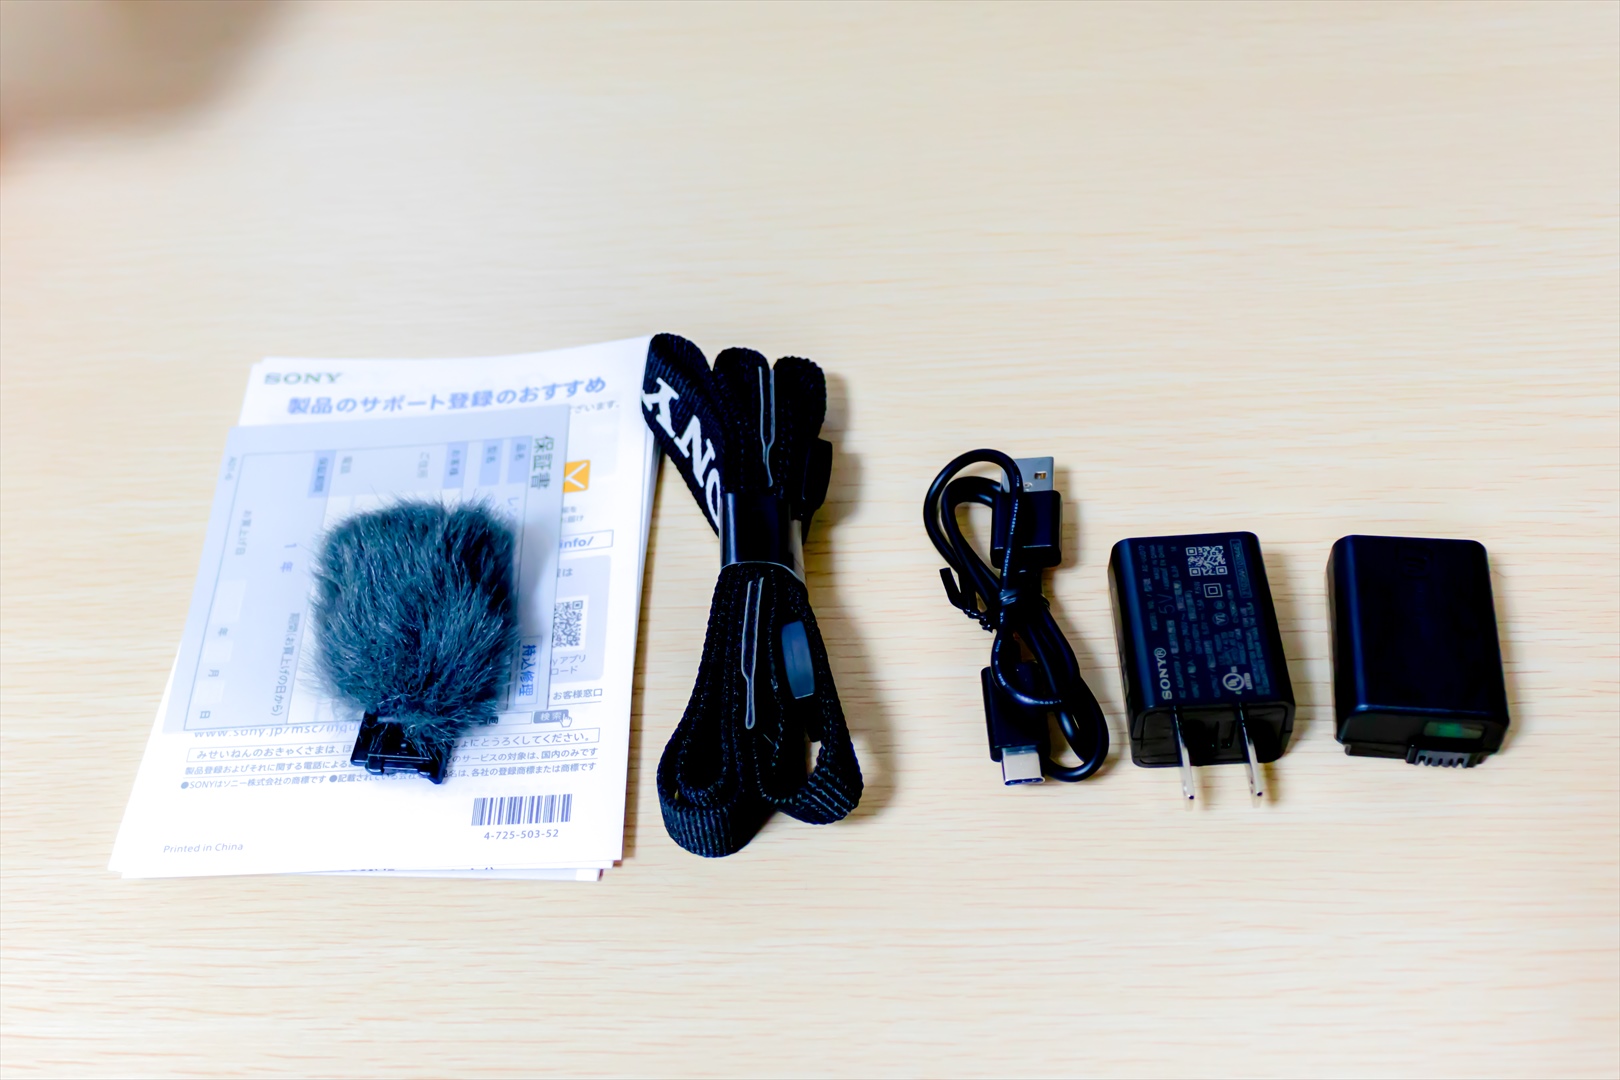 ZV-E10の付属品です。左から説明書、保証書、風防（通称もふもふ）、ストラップ、USBケーブル（TypeA-TypeC）、USB接続の充電アダプター、バッテリーです。